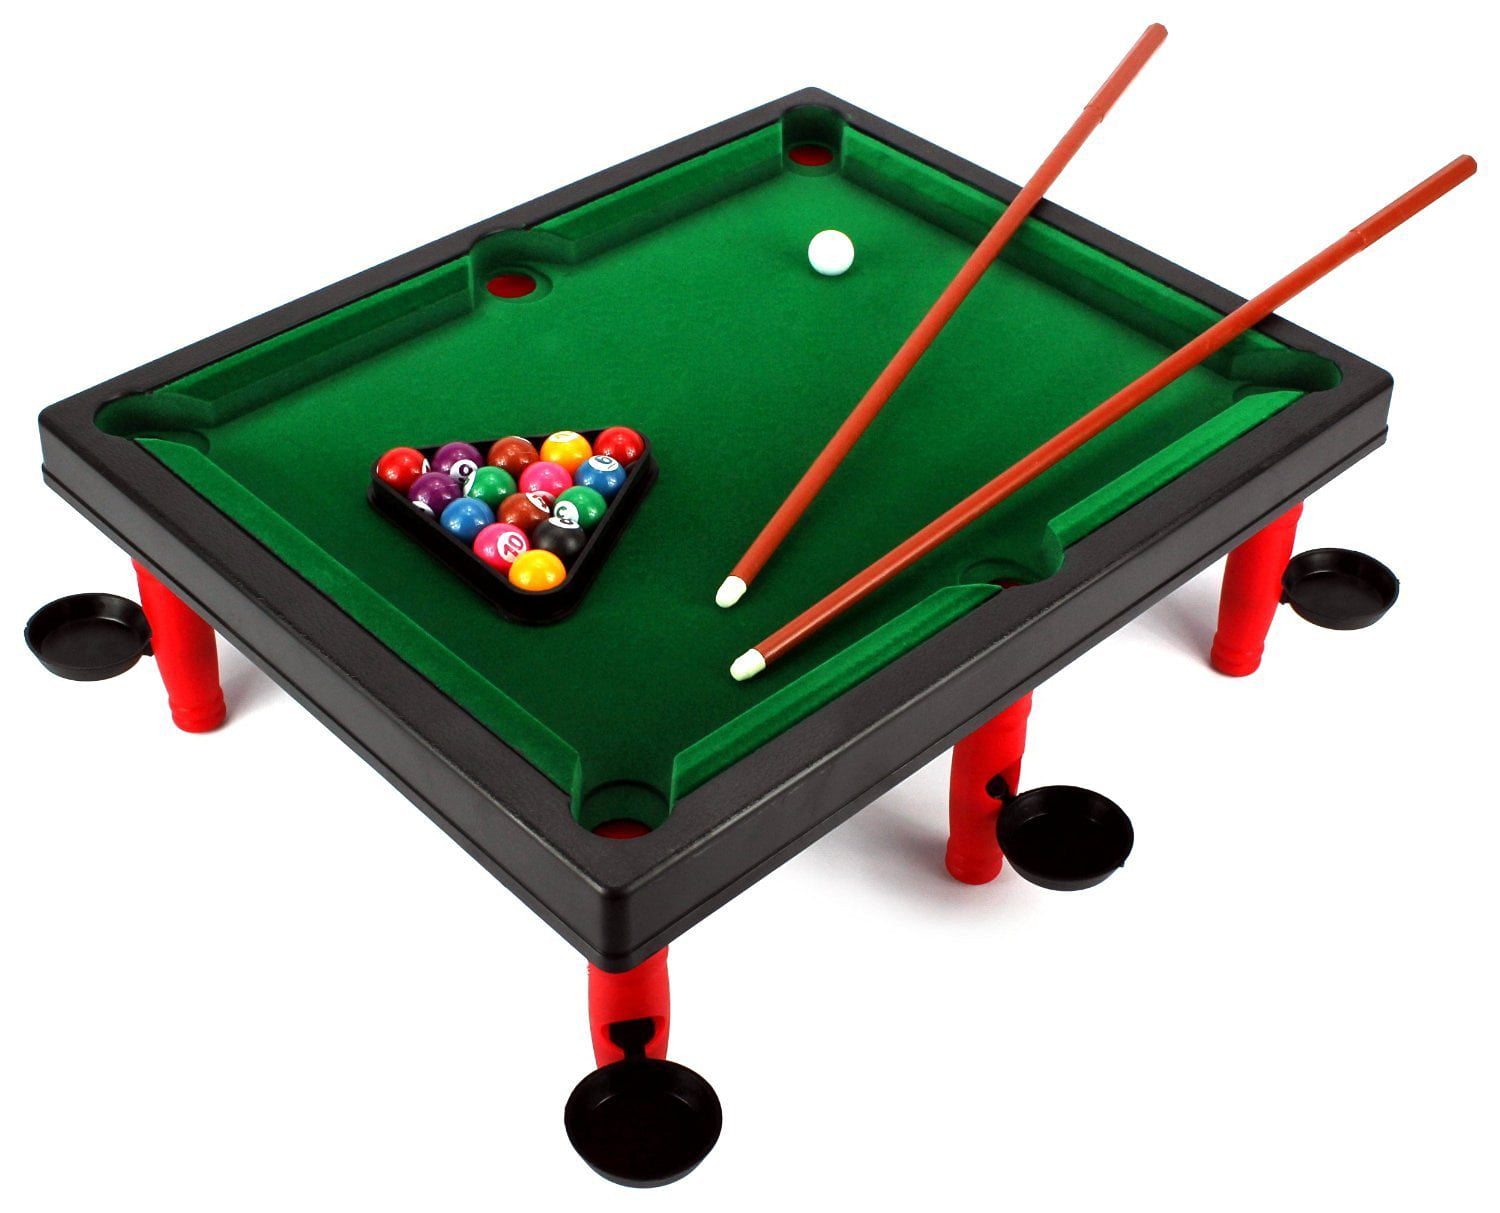 Vt Mini World Champion Toy Billiard Pool Table Game W Table Full Set Of Billiard Balls 2 Cues